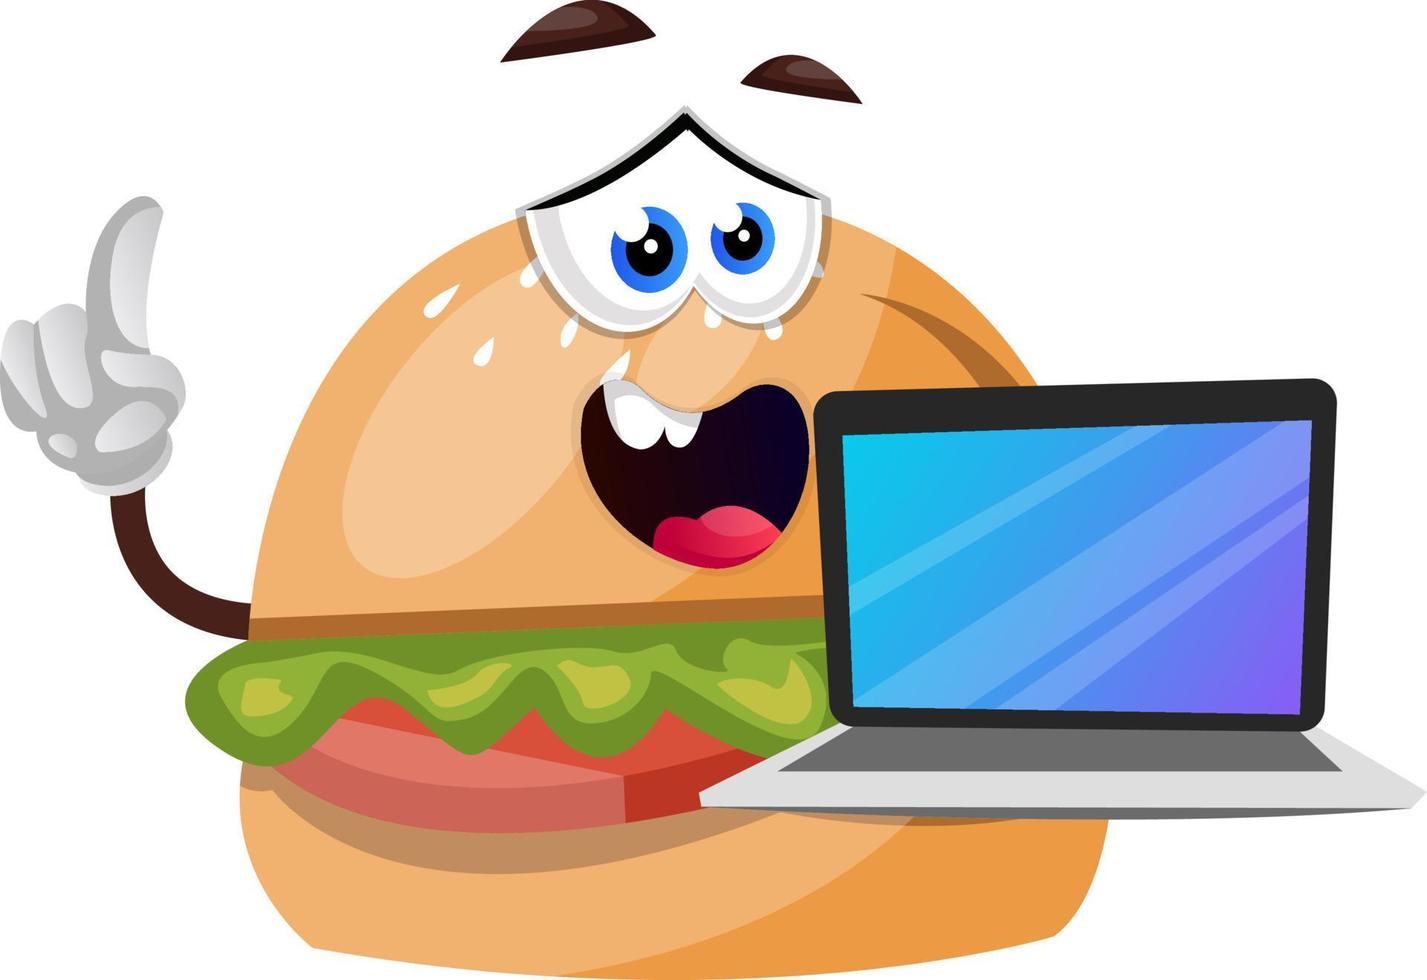 burger avec ordinateur portable, illustration, vecteur sur fond blanc.